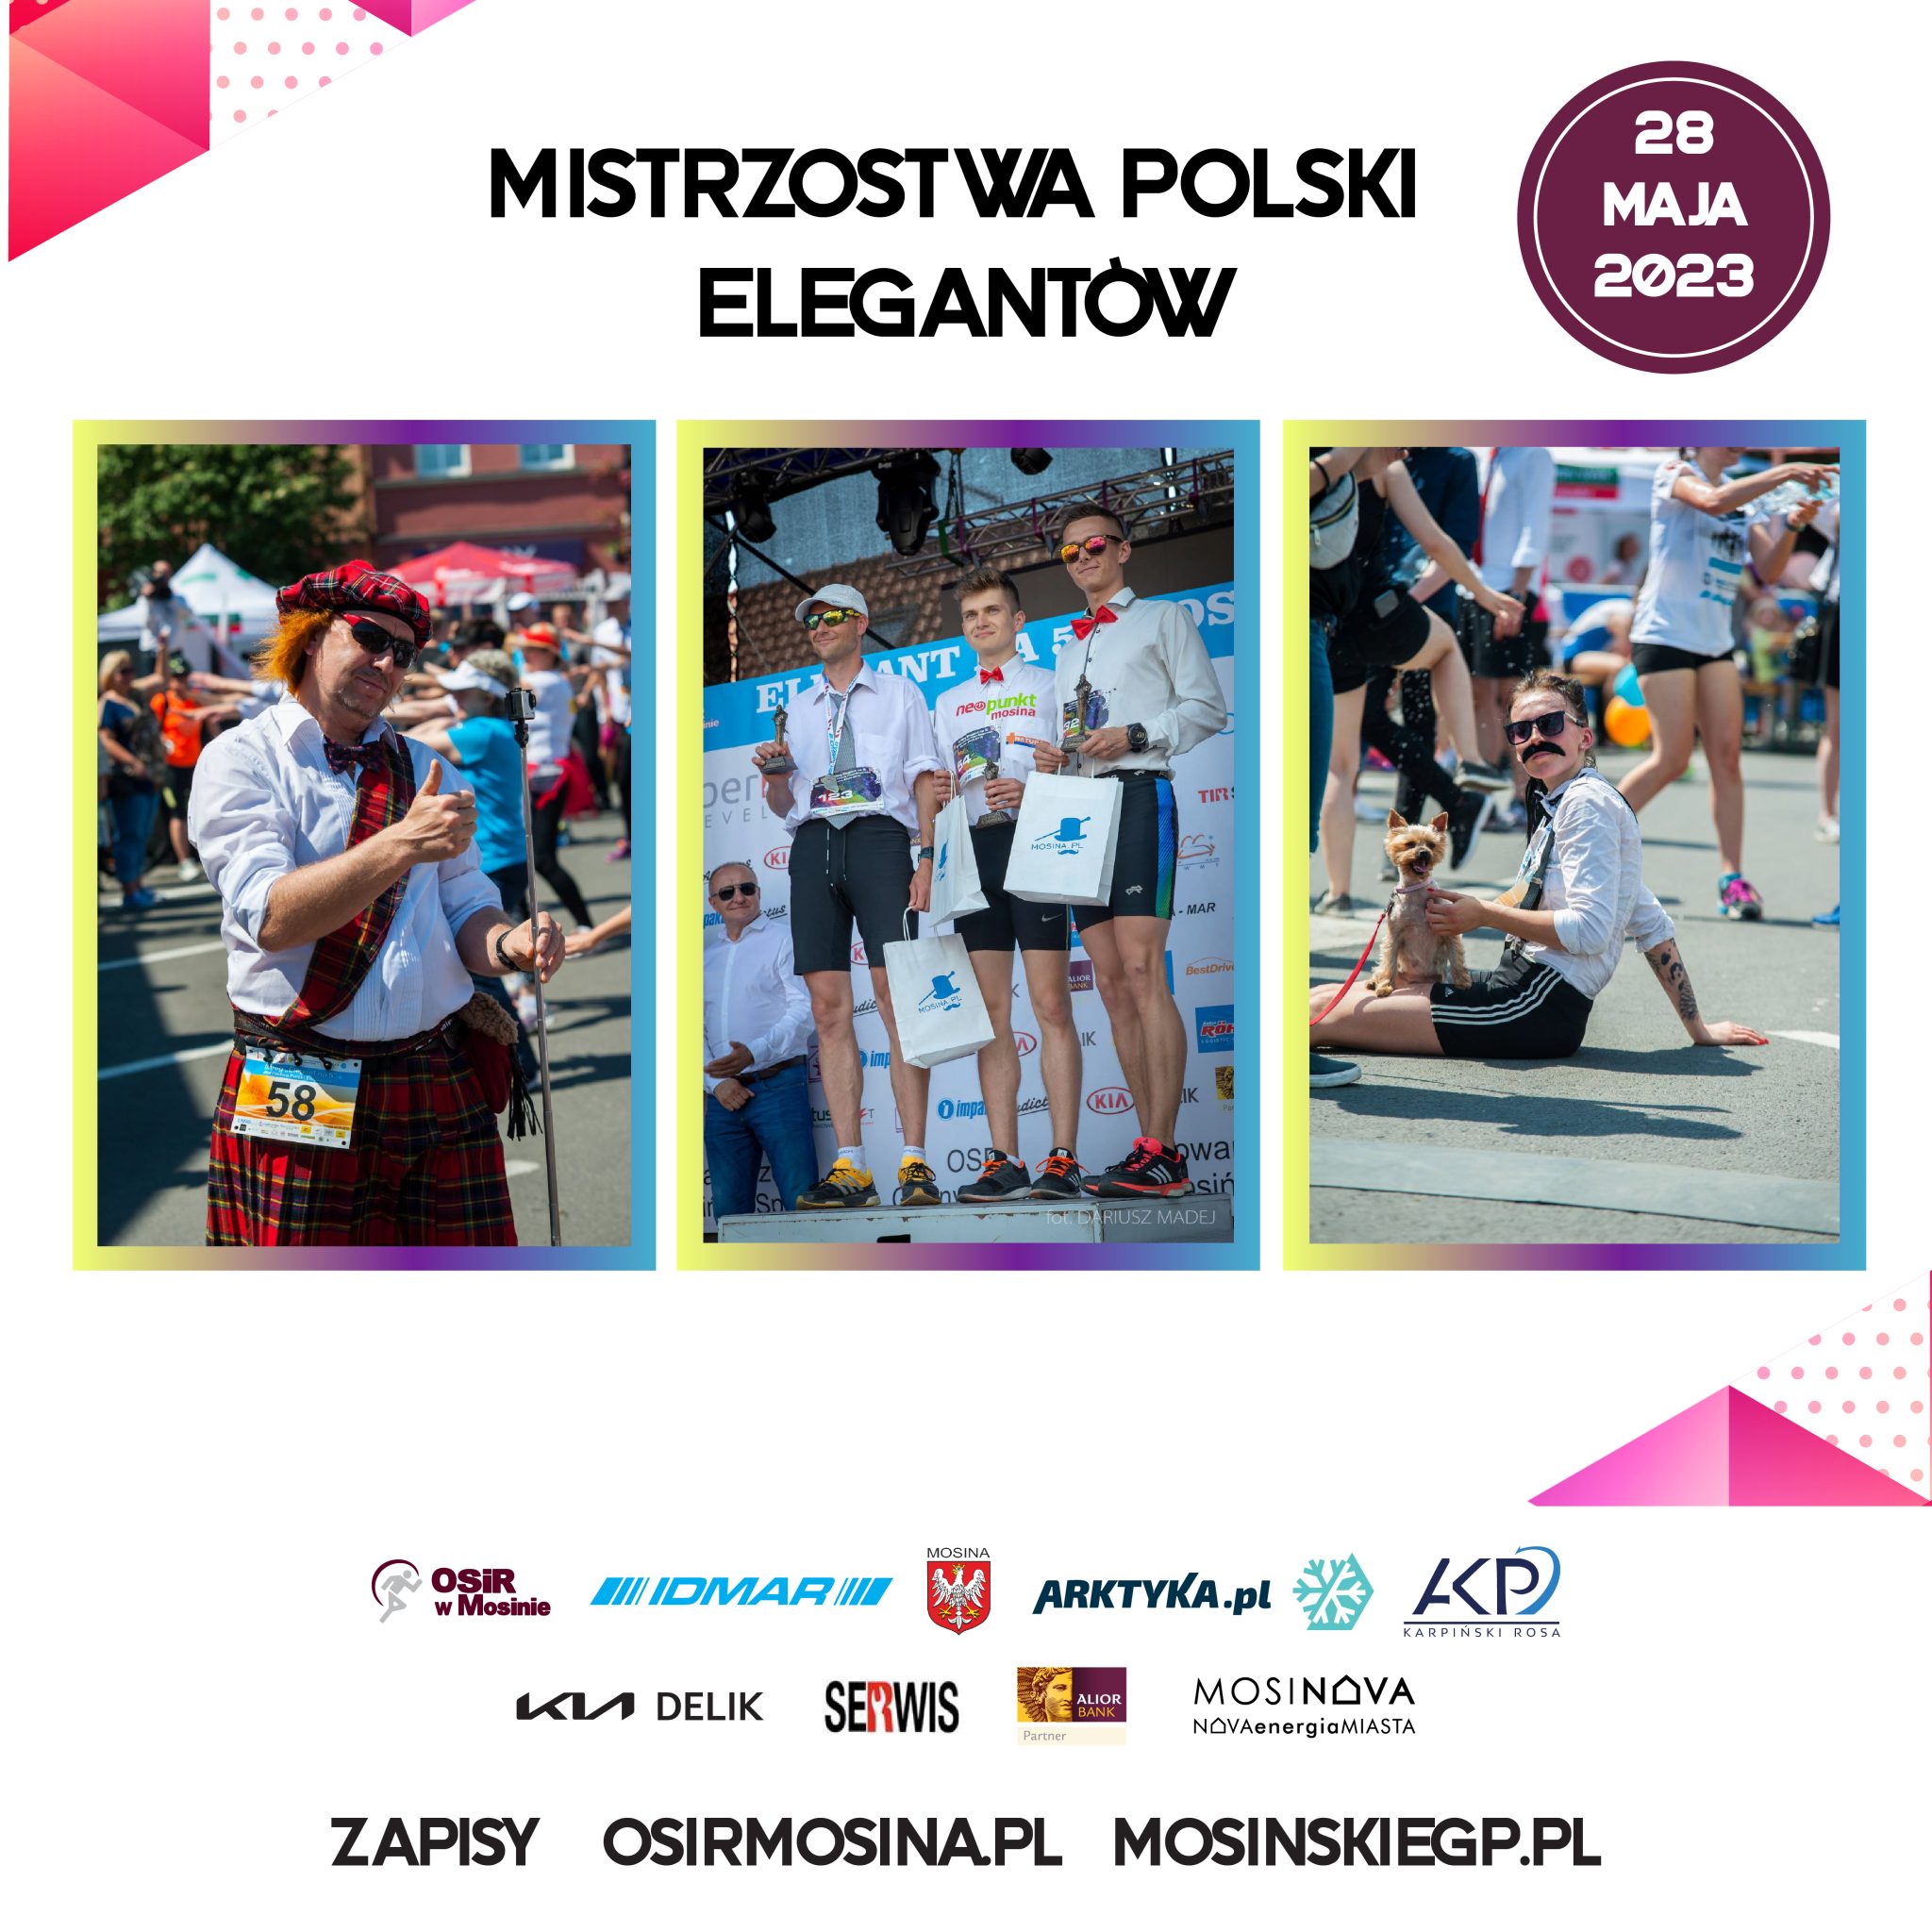 Mistrzostwa Polski Elegantów